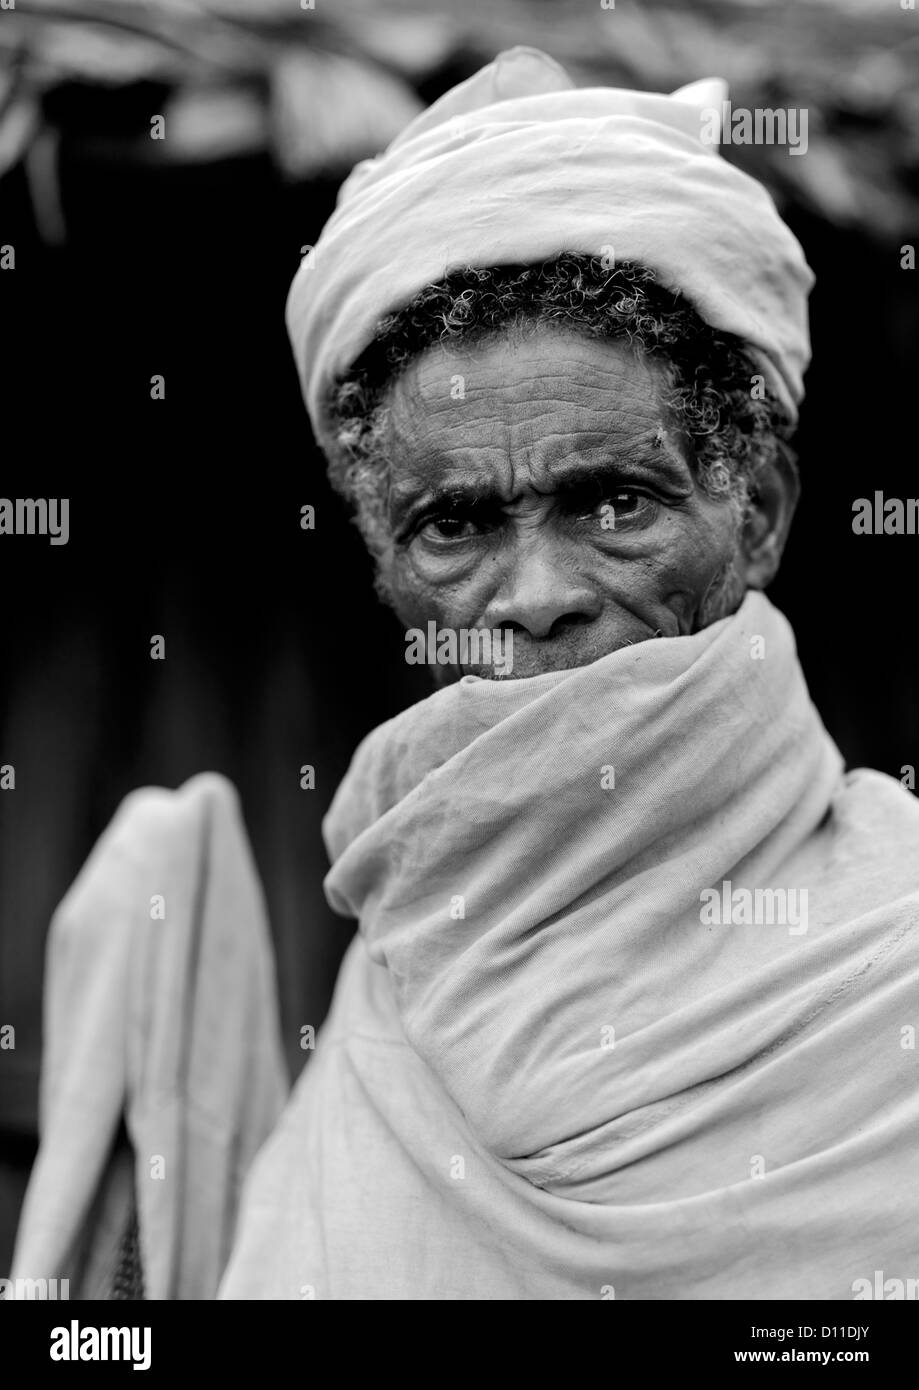 Portrait noir et blanc d'un homme avec la bouche du Borana couverts par une enveloppe blanche autour de vêtements, Moyale, Ethiopie Banque D'Images